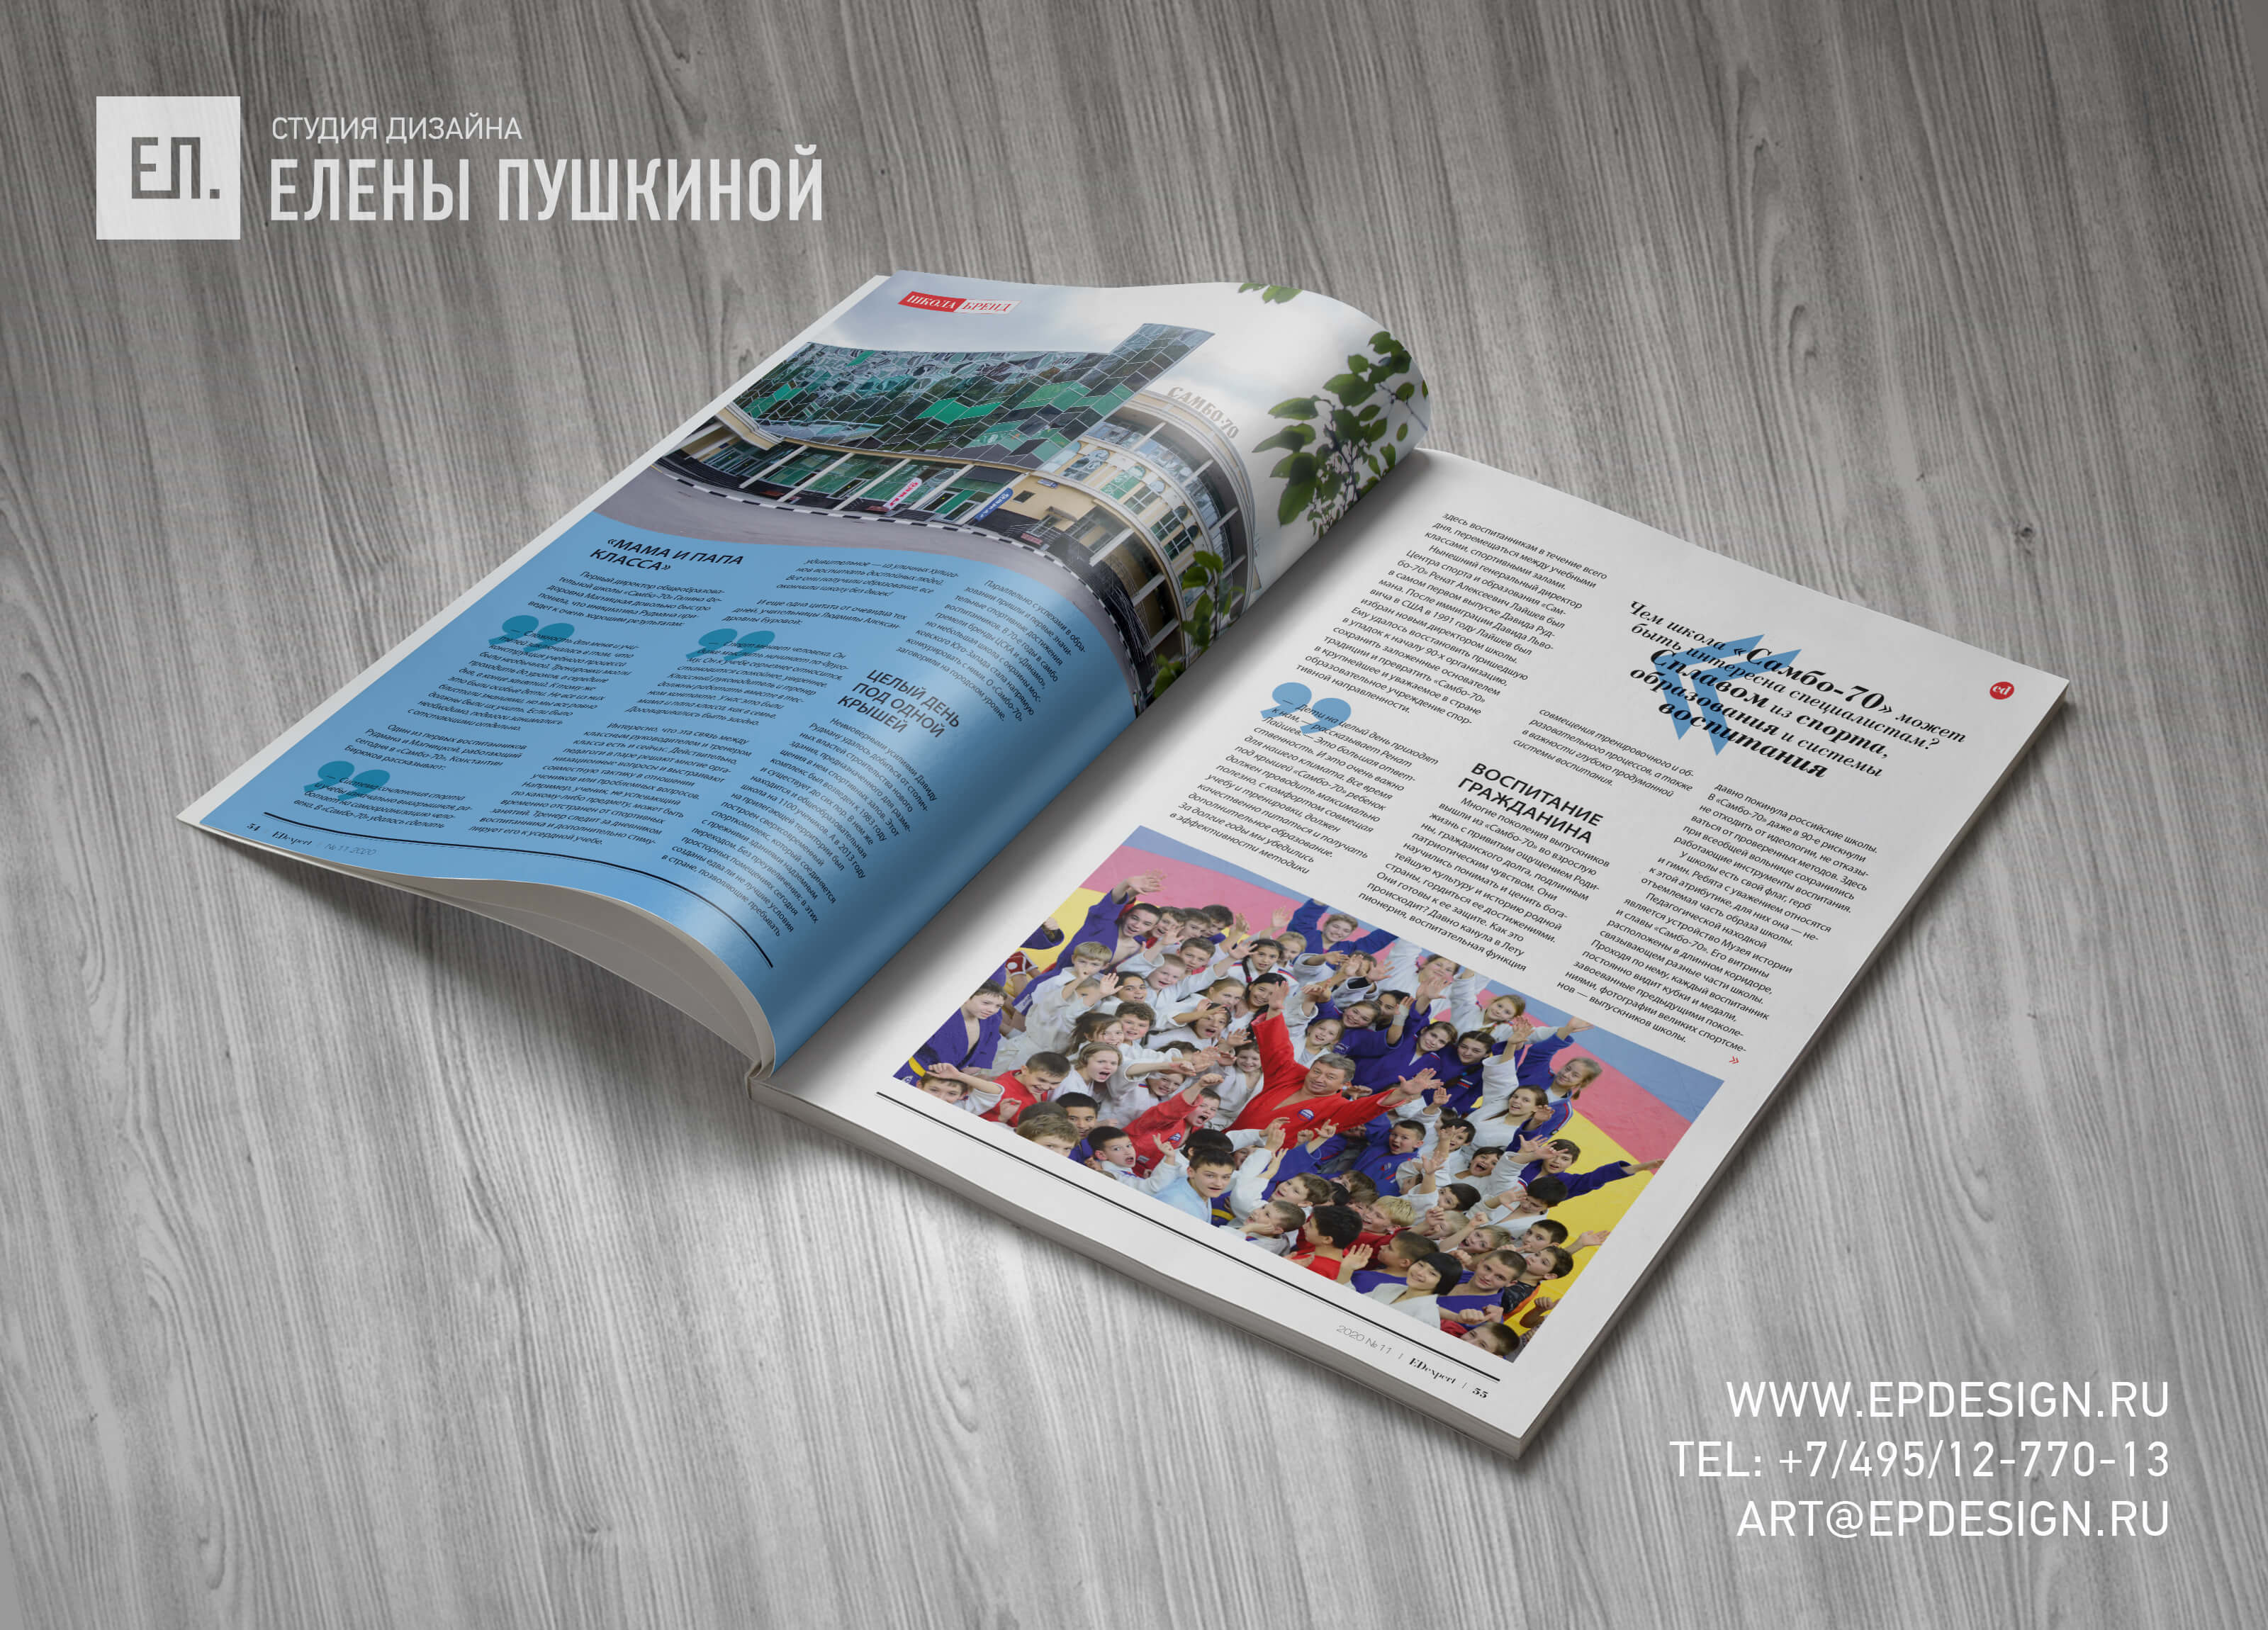 Журнал «EDexpert» №11 апрель 2020 — разработка с «нуля» логотипа, обложки, макета и вёрстка журнала Разработка журналов Портфолио